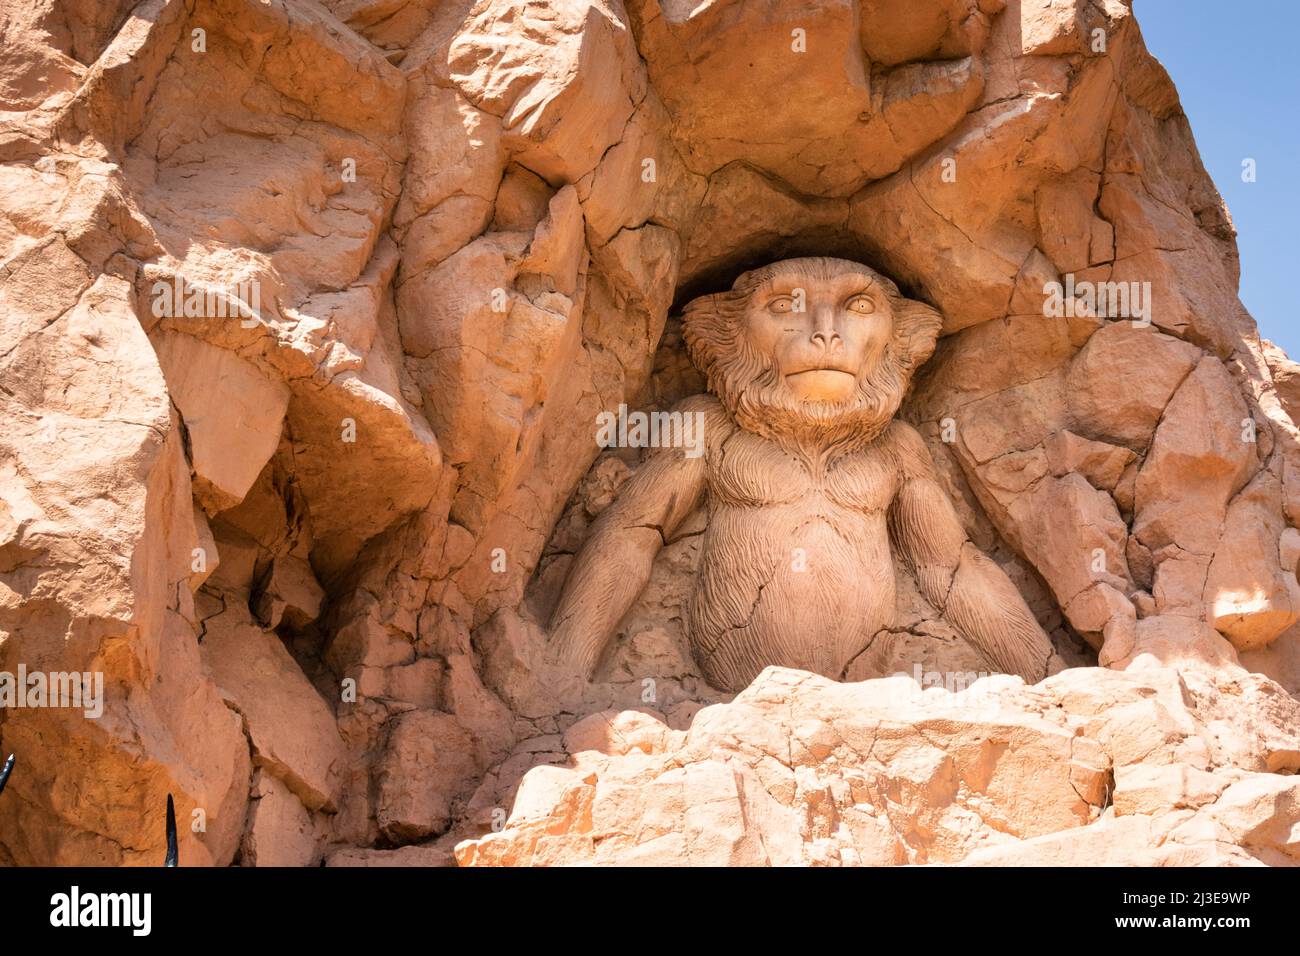 Singe africain sculpté dans le rocher. Roches artificielles. Banque D'Images